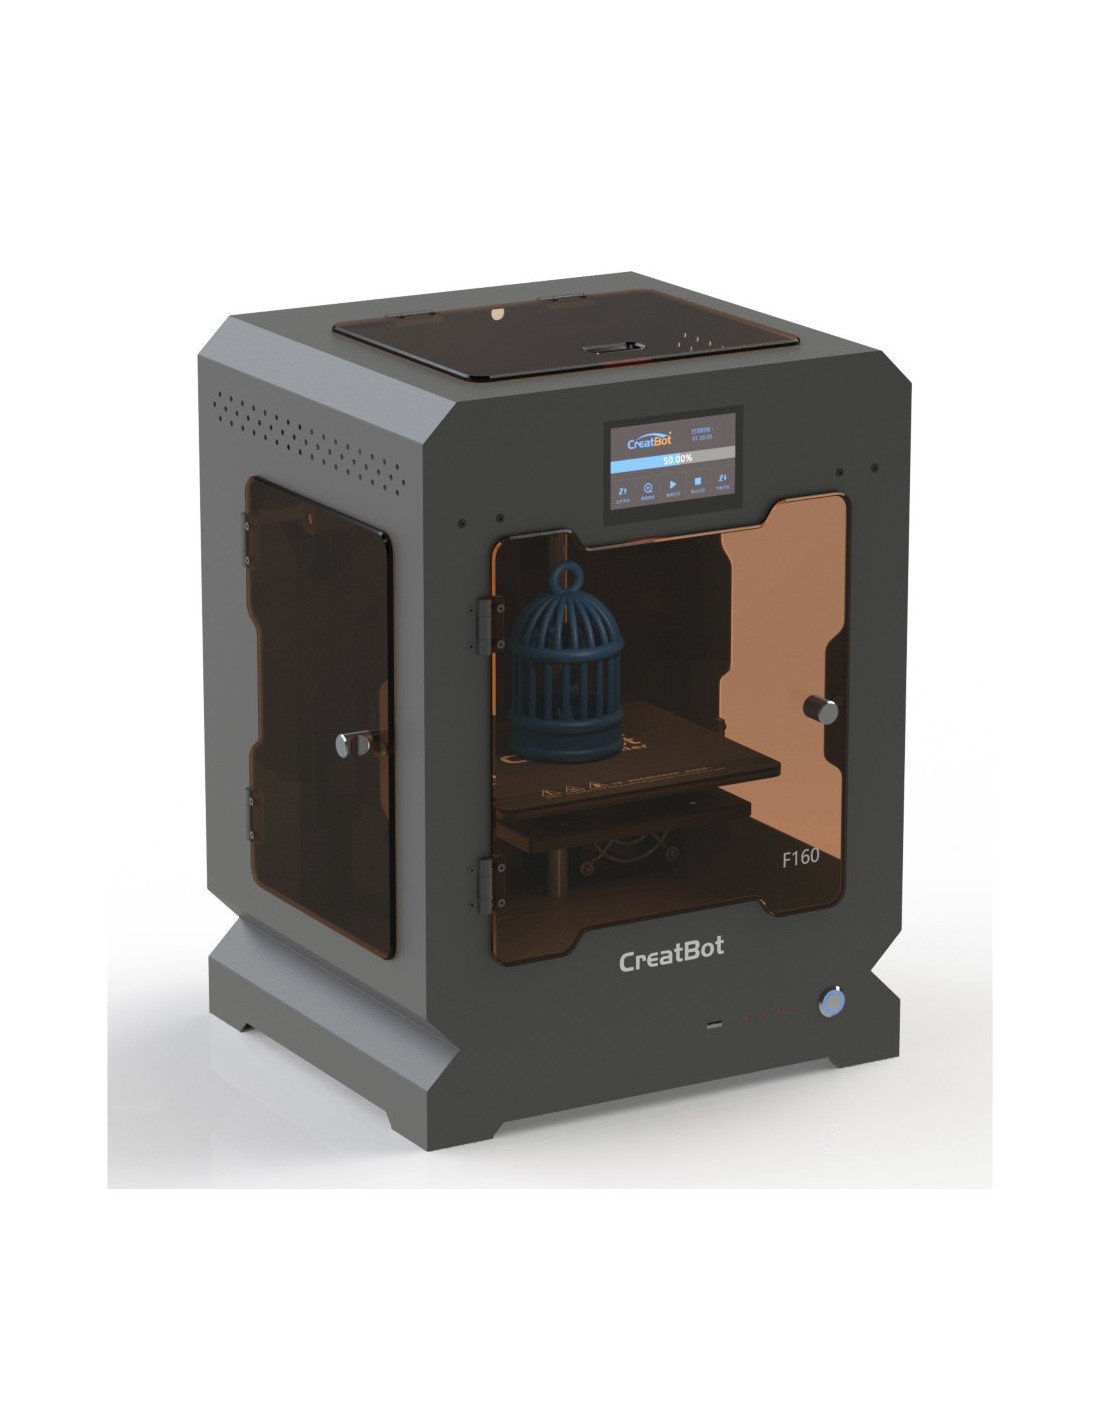 CreatBot F160 - Impressora 3D